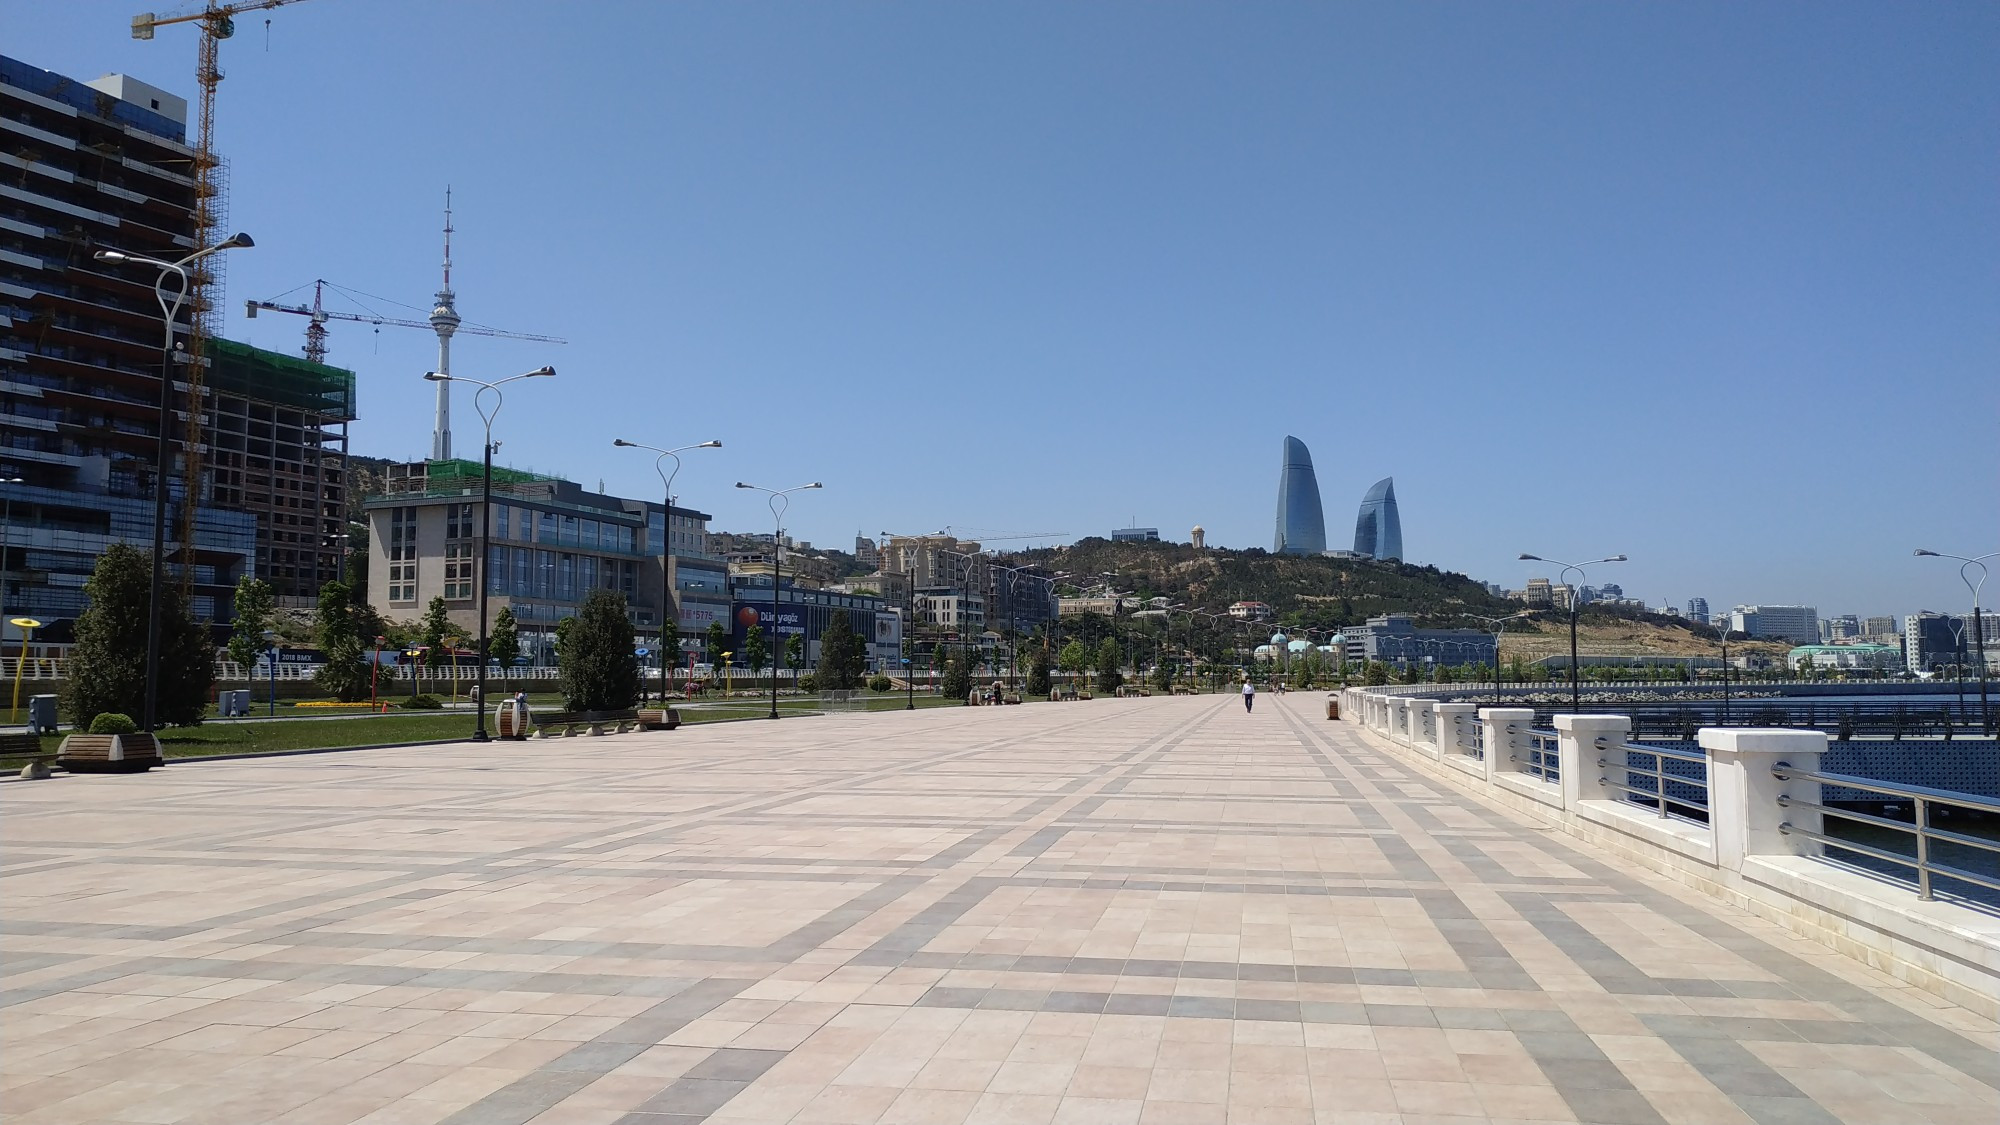 Baku, Azerbaijan